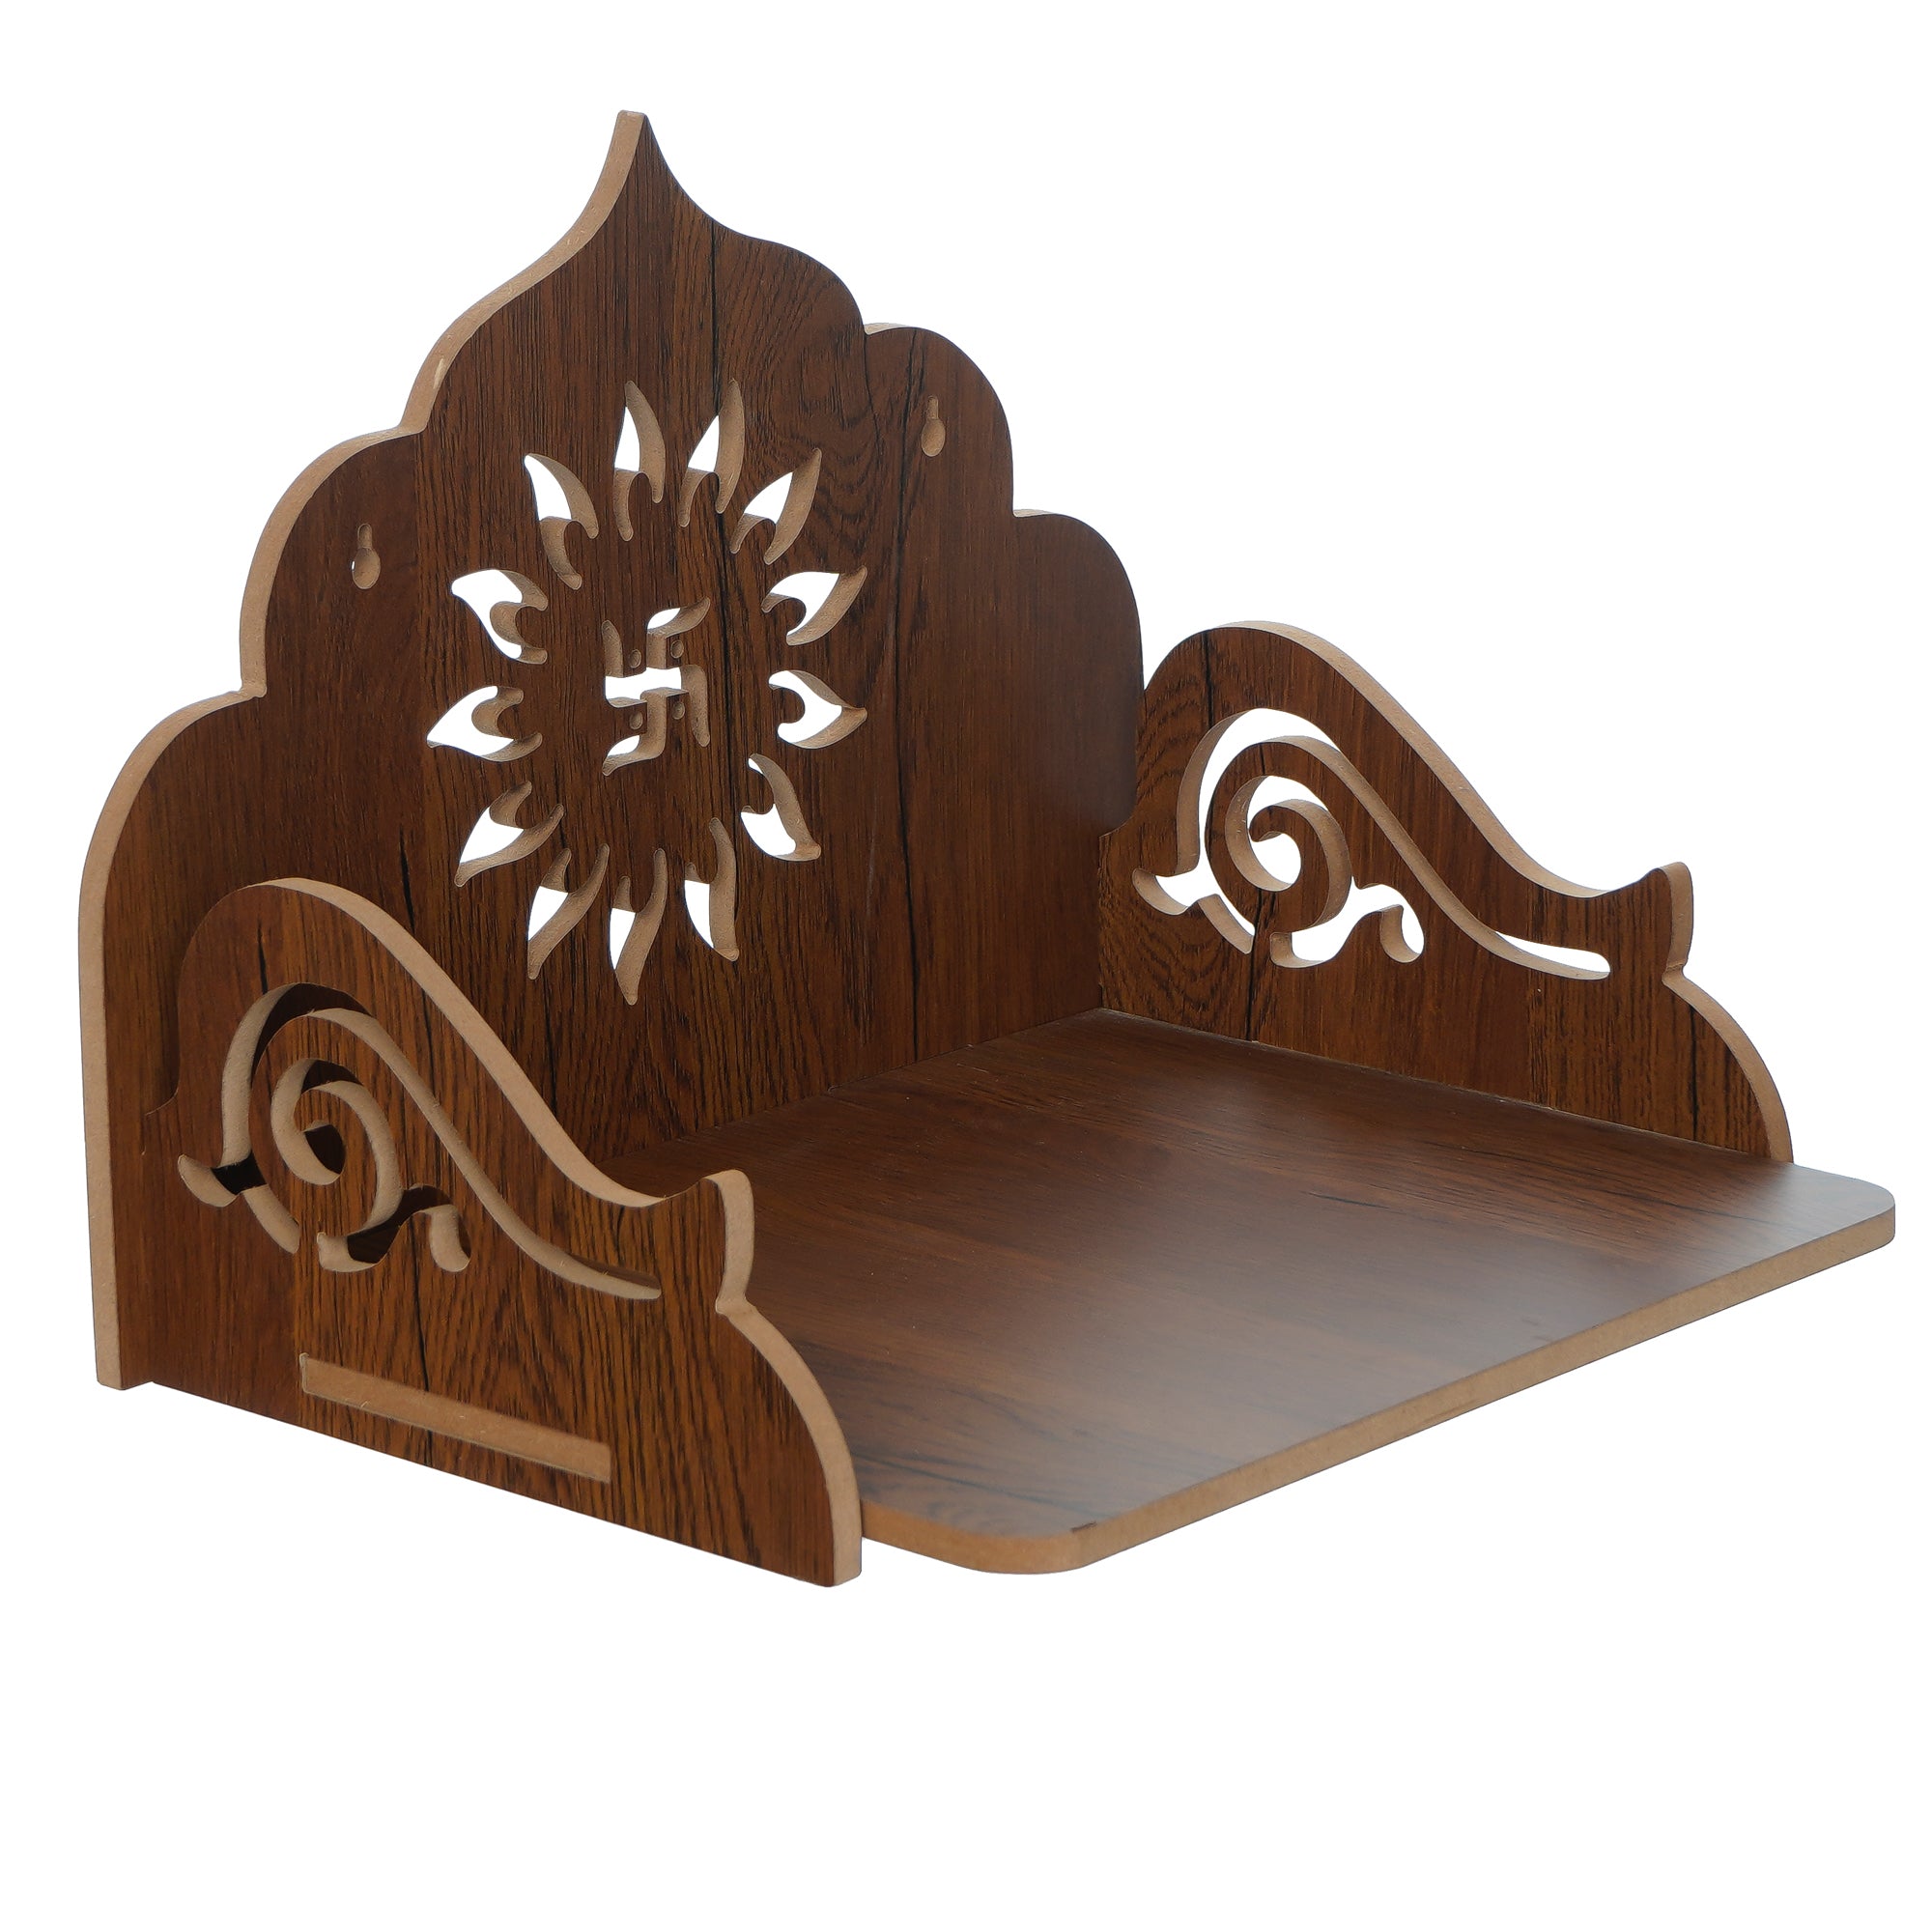 Swastik Design Laminated Wood Pooja Temple/Mandir 2